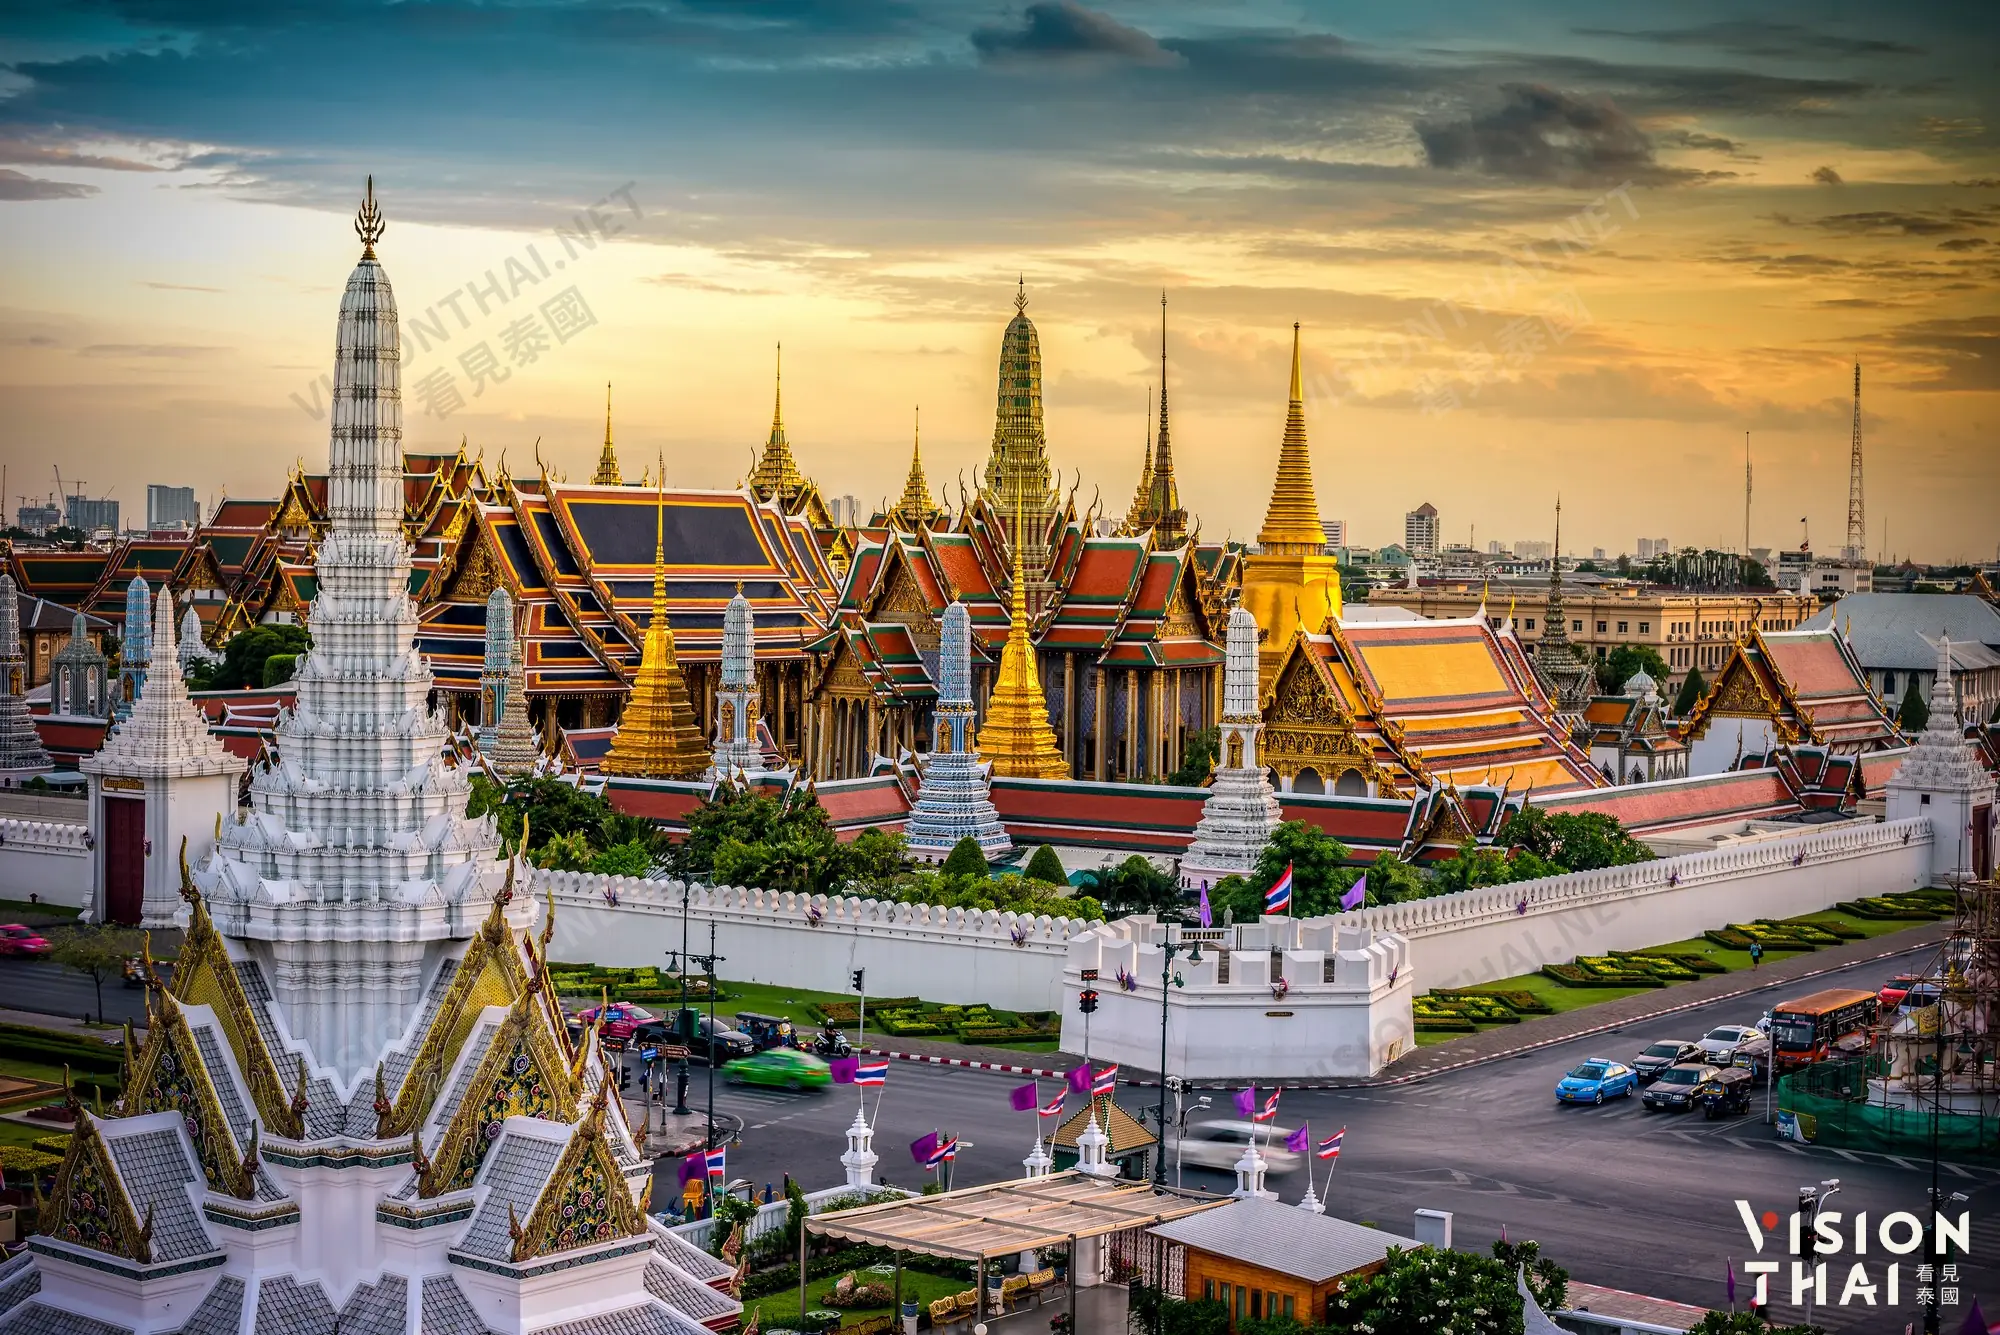 曼谷大王宫(The Grand Palace)被誉为“泰国艺术大全”（Vision Thai 看见泰国）